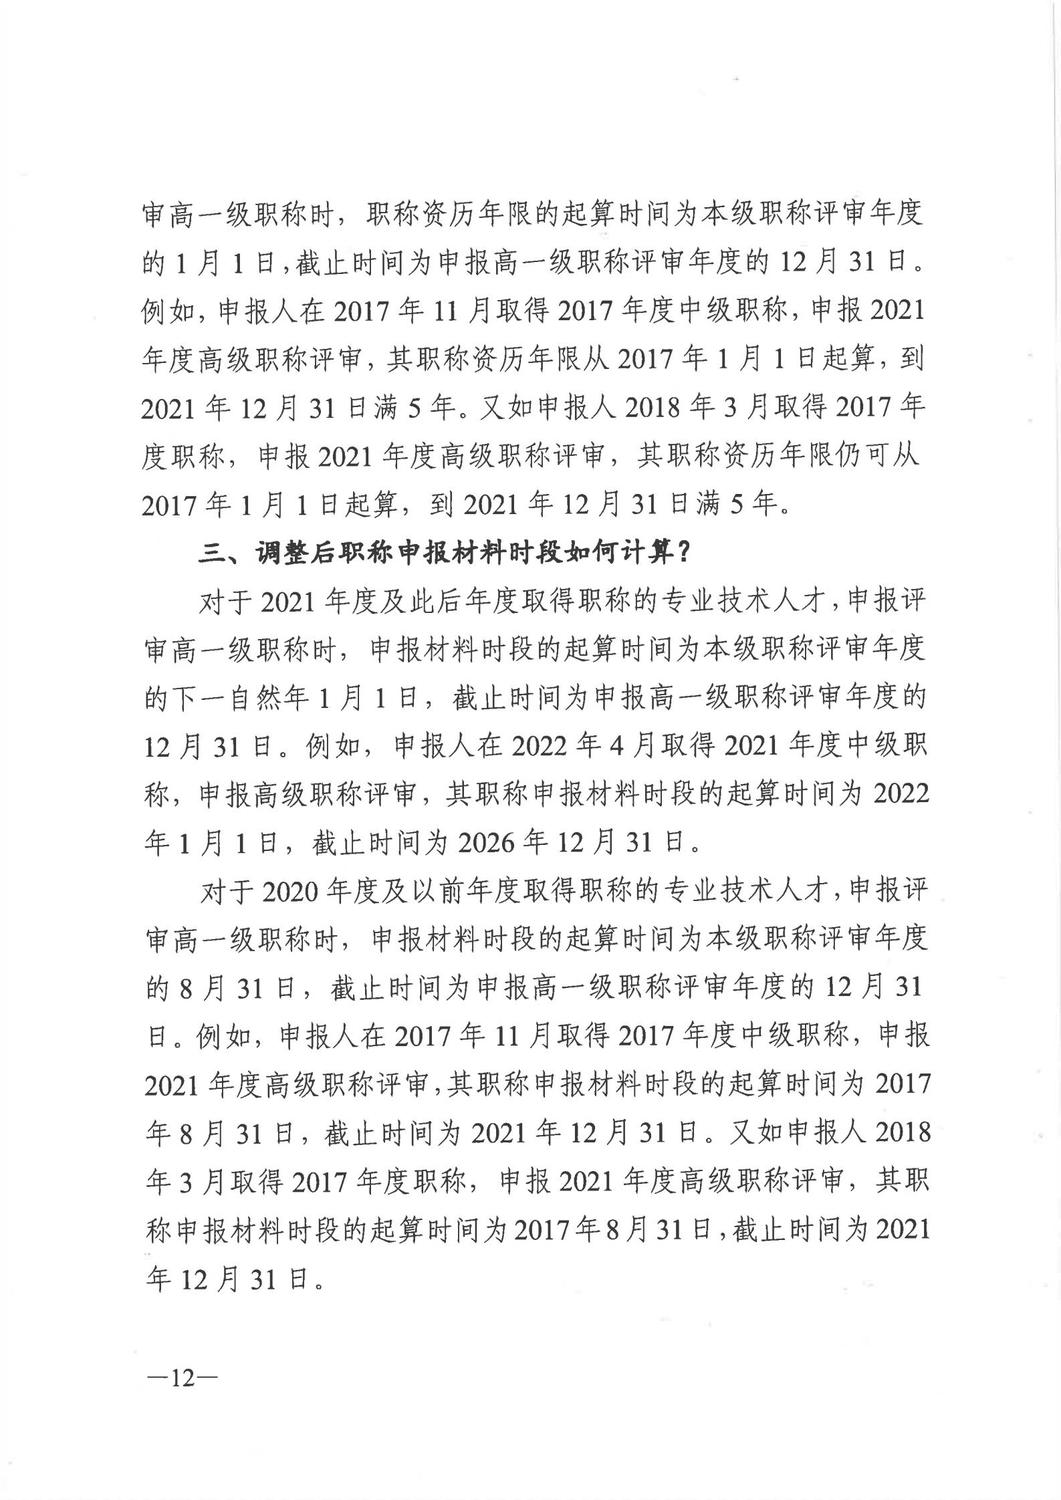 广东省人力资源和社会保障厅《关于做好2021年度职称评审工作的通知》_11.jpg